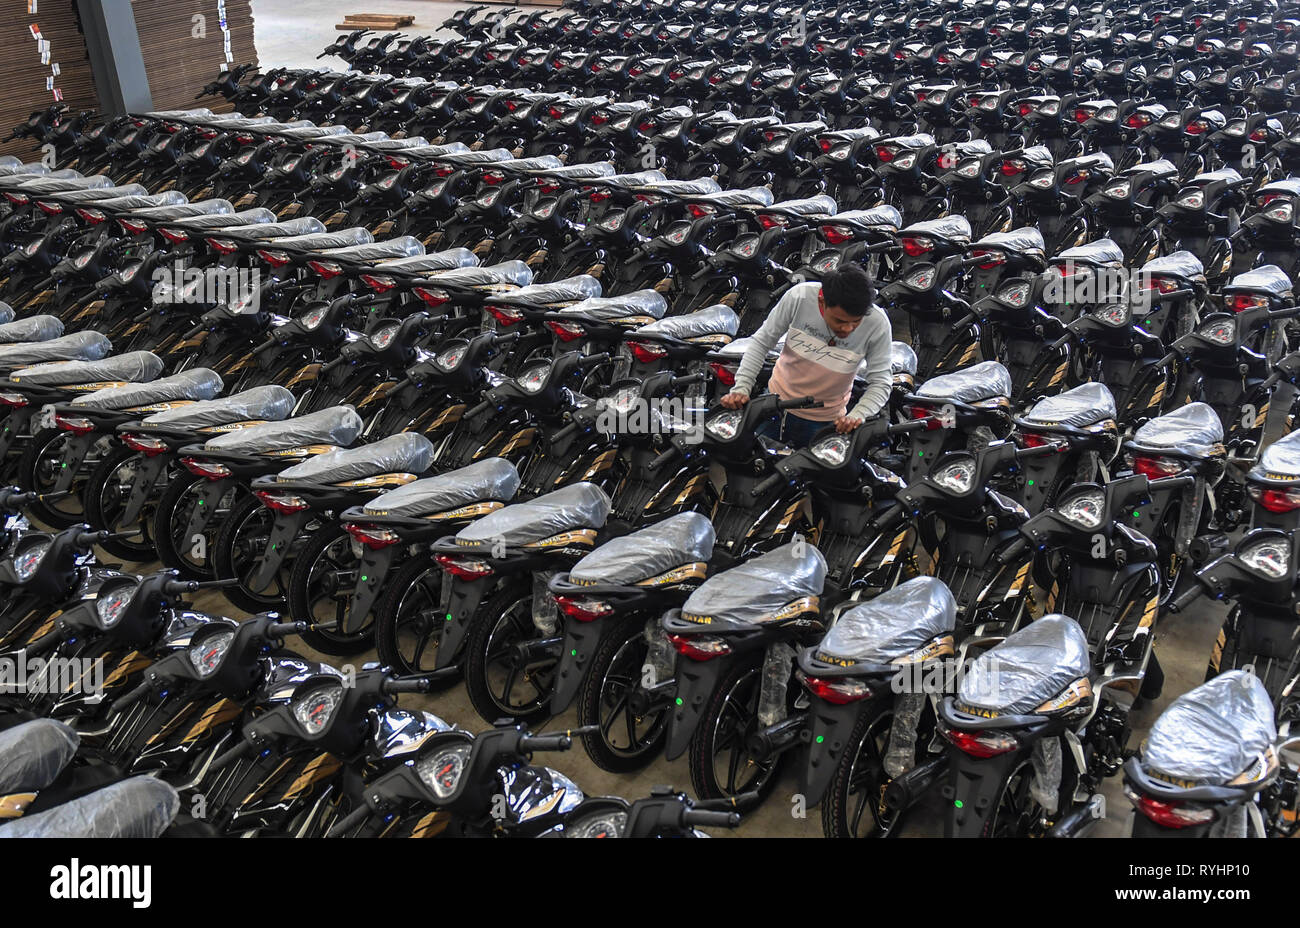 (190313) - RUILI, 13. März 2019 (Xinhua) - Abgeschlossen Motorräder werden auf einem Workshop in Yunnan Yinxiang Motorrad Manufacturing Co., Ltd. in Ruili, im Südwesten der chinesischen Provinz Yunnan, 8. März 2019 gesehen. Die Produkte der Firma werden hauptsächlich nach Süd- und südostasiatischen Ländern verkauft. Das Unternehmen hat mehr als 10.000 Verkaufsstellen in Myanmar. Ruili, einer Stadt an der Grenze China-Myanmar, ist ein wichtiges Land Hafen im Südwesten Chinas. Eine berühmte chinesische Song namens 'Es ist ein schöner Ort" beschreibt die Schönheit der Stadt, mit seiner einzigartigen Landschaft und bunte Folklore. In Stockfoto